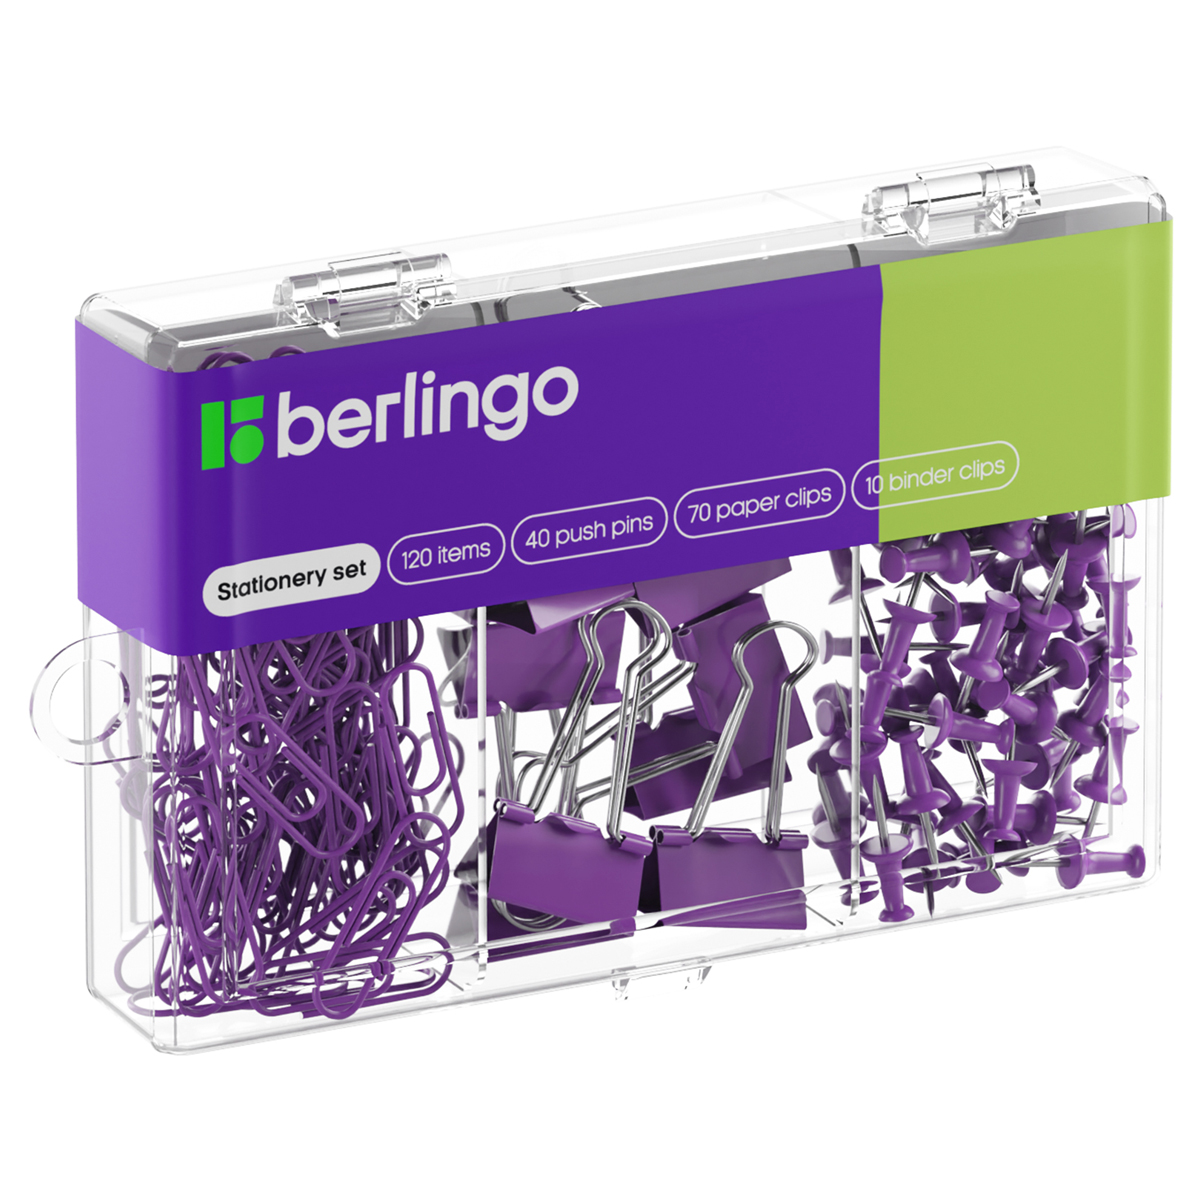 Набор мелкоофисных принадлежностей Berlingo, 120 предметов, фиолетовый, пластиковая упаковка оптом